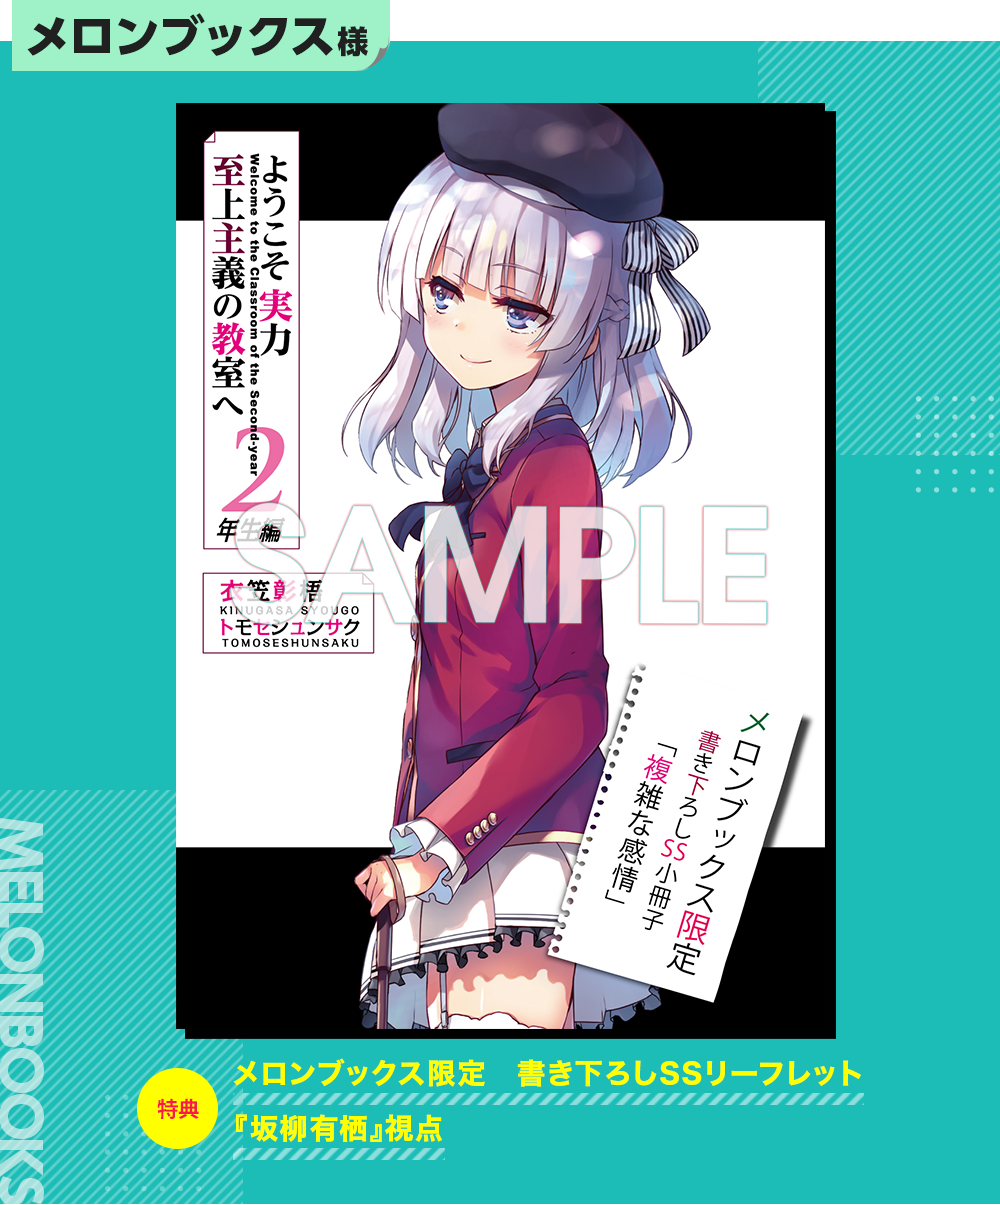 LN Year 2 Volume 6 Melonbooks SS: Arisu Sakayanagi : r/ClassroomOfTheElite